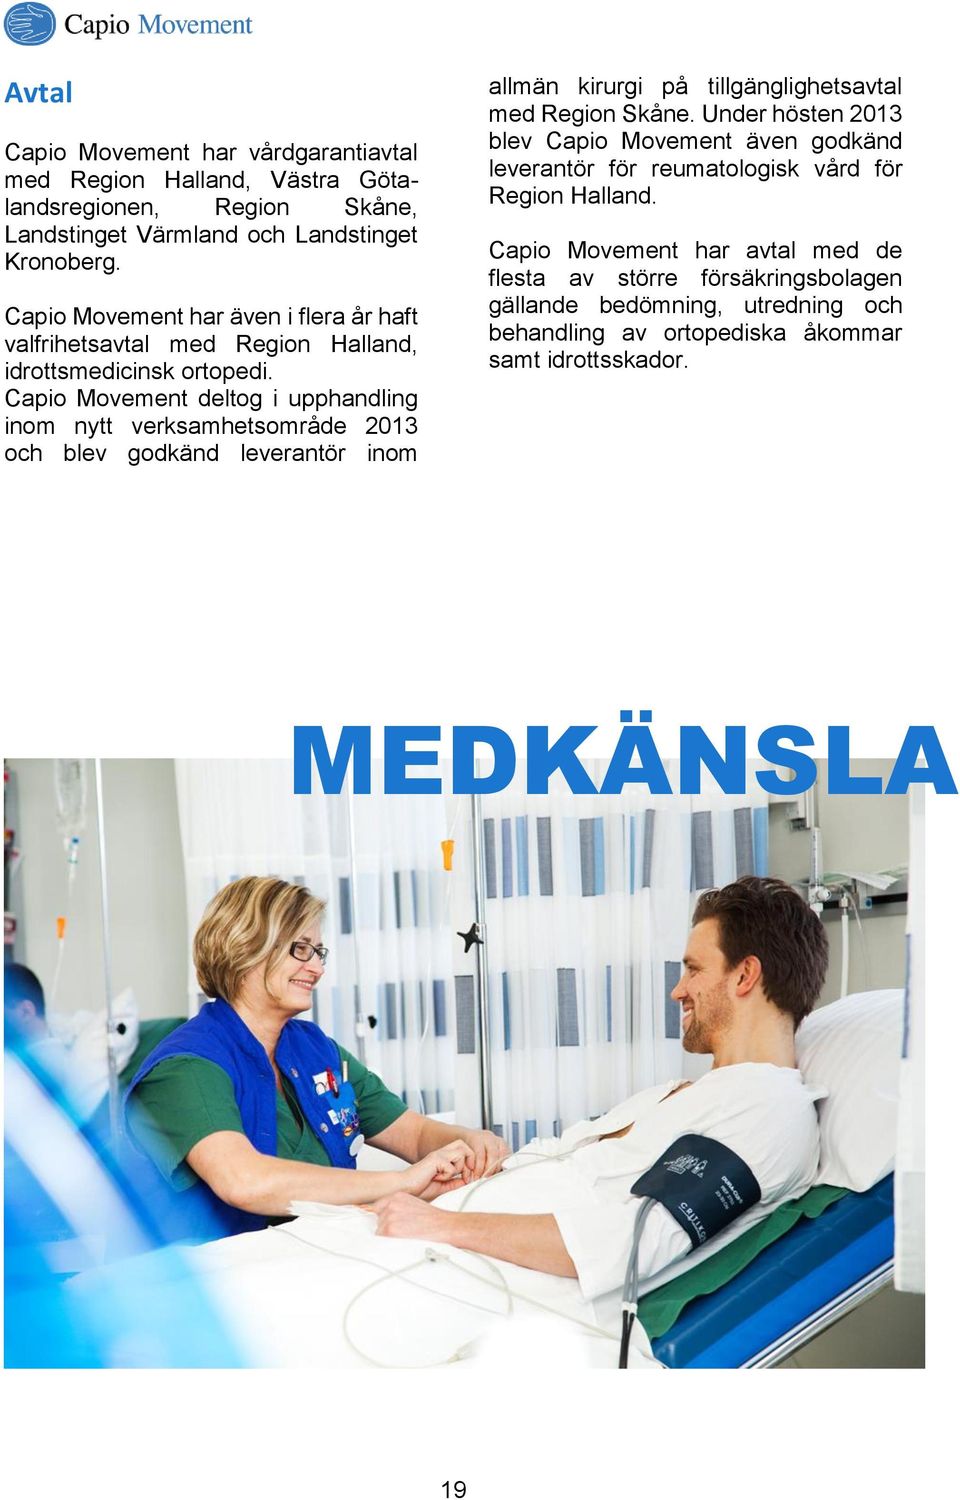 Capio Movement deltog i upphandling inom nytt verksamhetsområde 2013 och blev godkänd leverantör inom allmän kirurgi på tillgänglighetsavtal med Region Skåne.